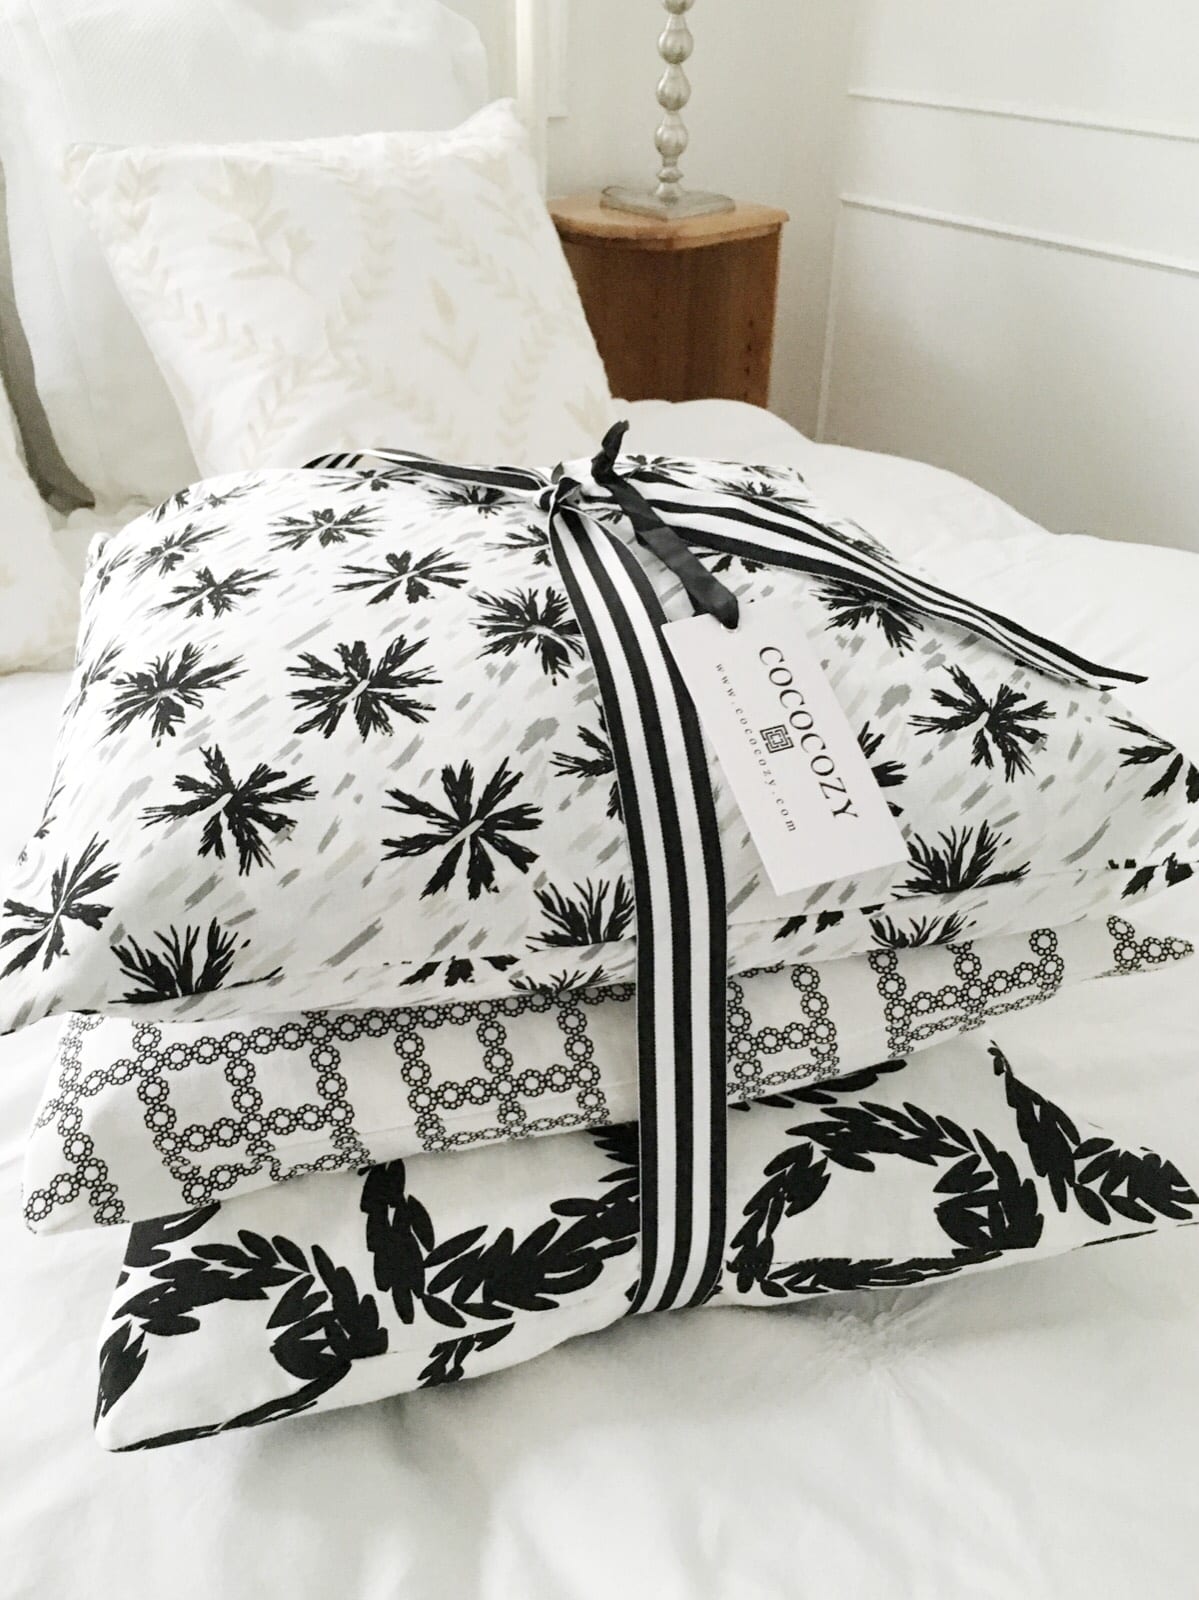 Black white pillows